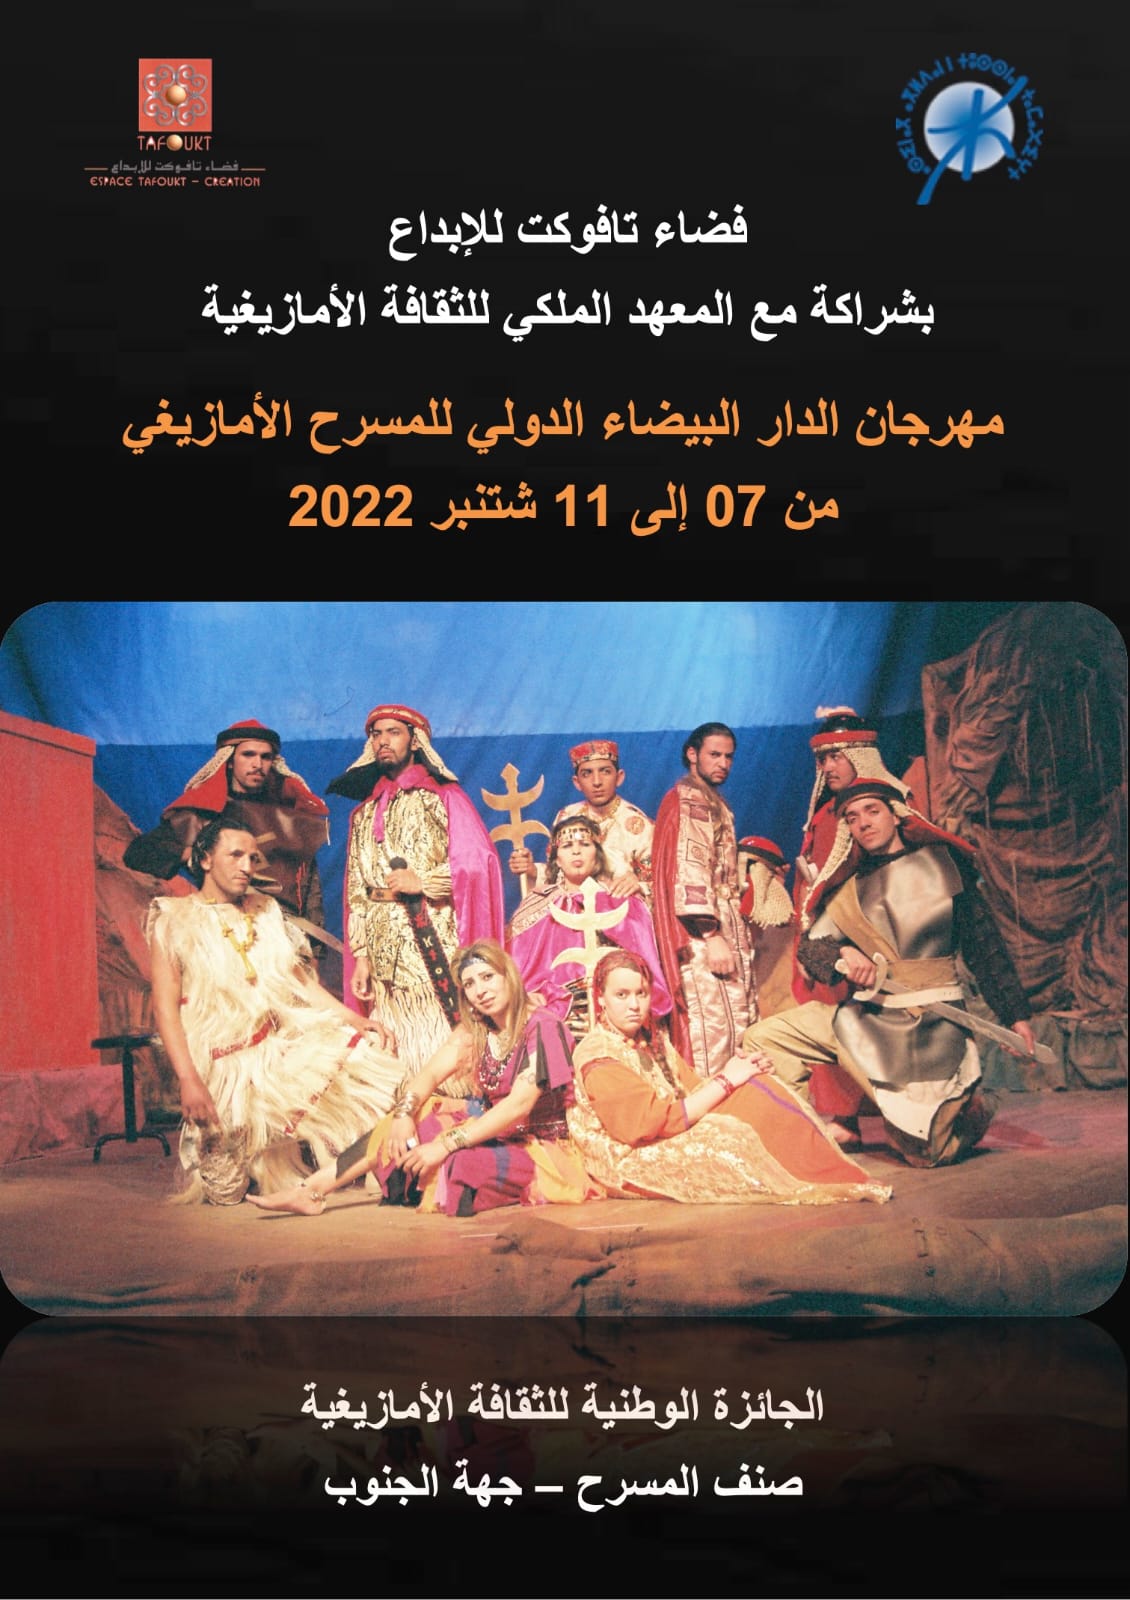 إعلان الترشح لنيل الجائزة الوطنية للثقافة الأمازيغية، صنف المسرح فضاء تافوكت للإبداع بشراكة مع المعهد الملكي للثقافة الأمازيغية